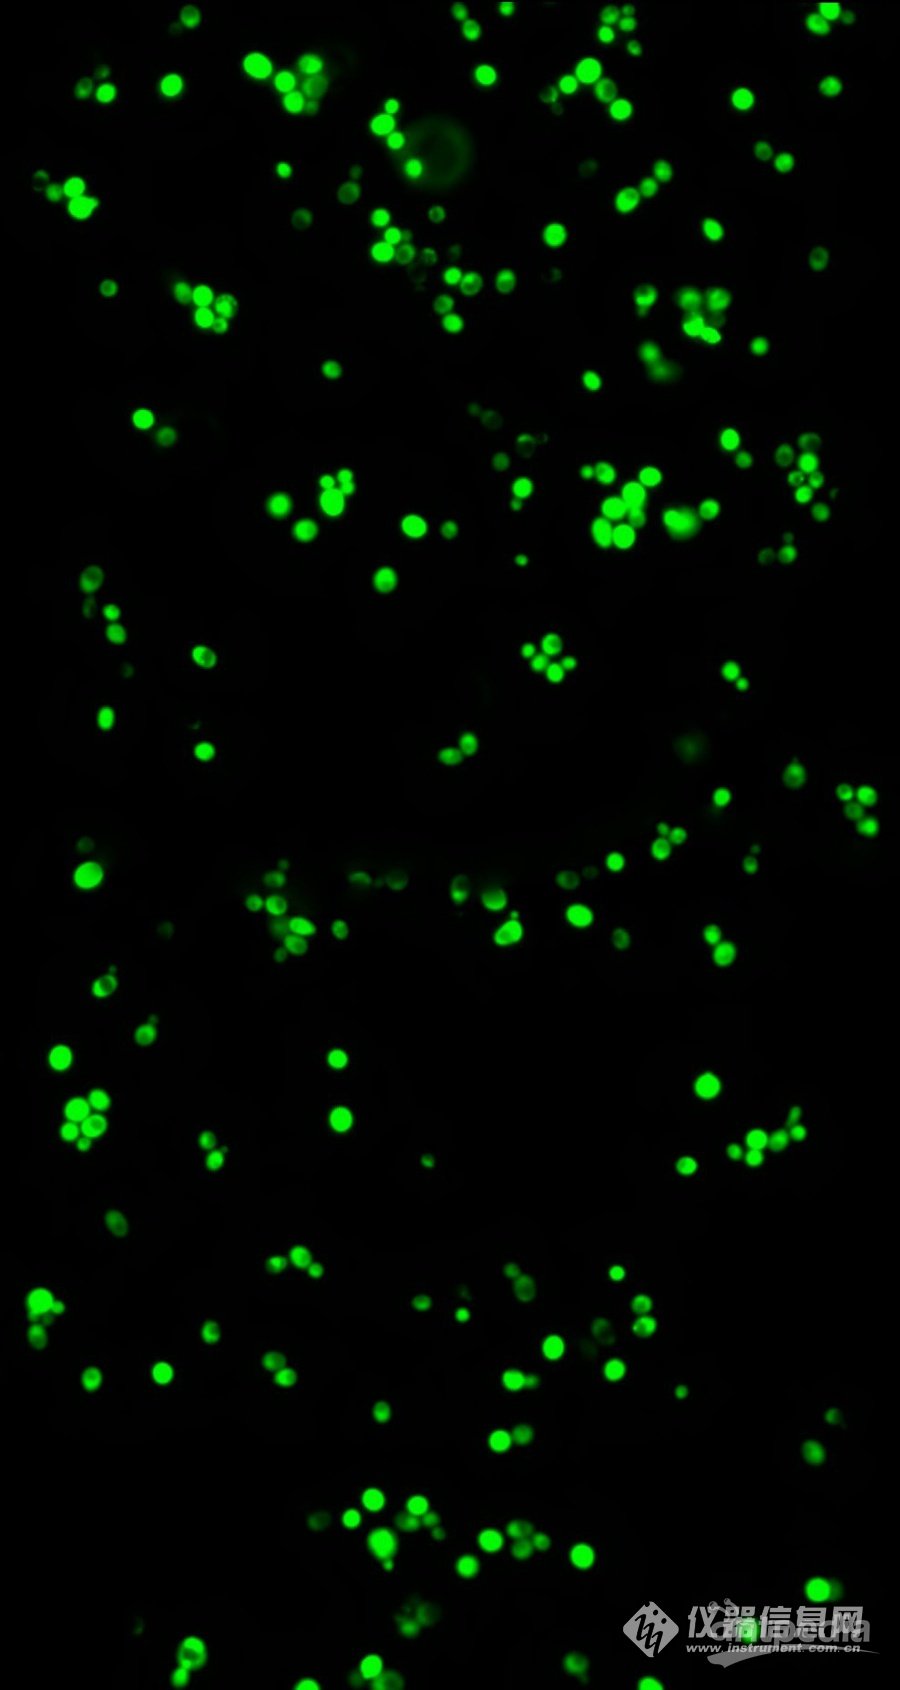 酵母菌荧光图.jpg